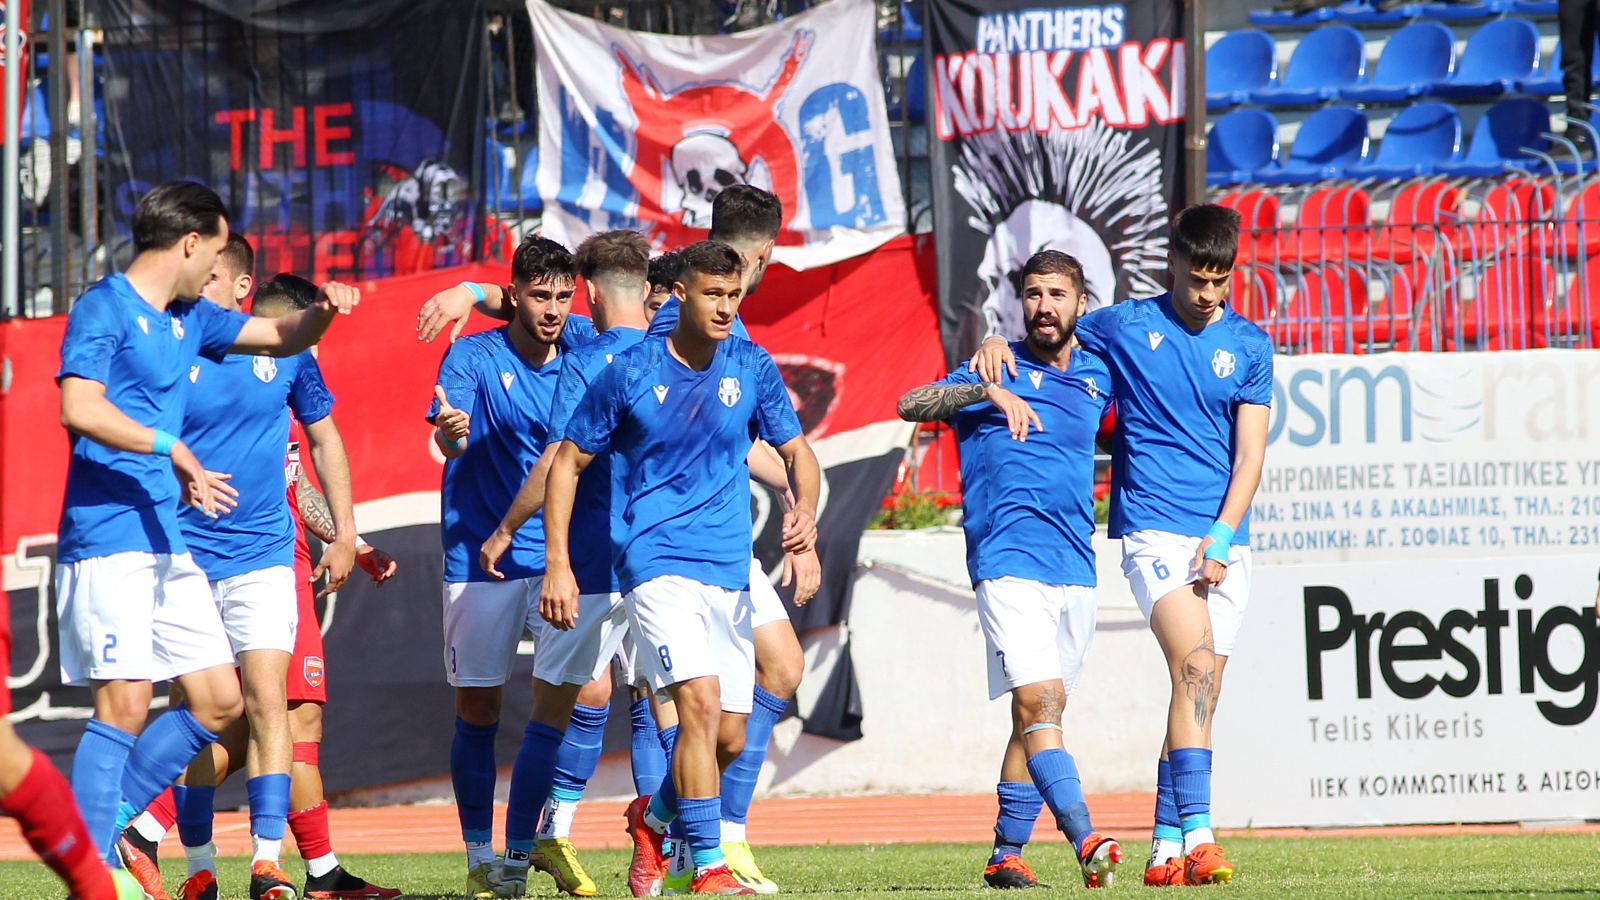 Νέο σταθμό θα έχει η ποδοσφαιρική διαδρομή του Έλληνα άσσου, μετά από έναν χρόνο παρουσίας στη Ριζούπολη